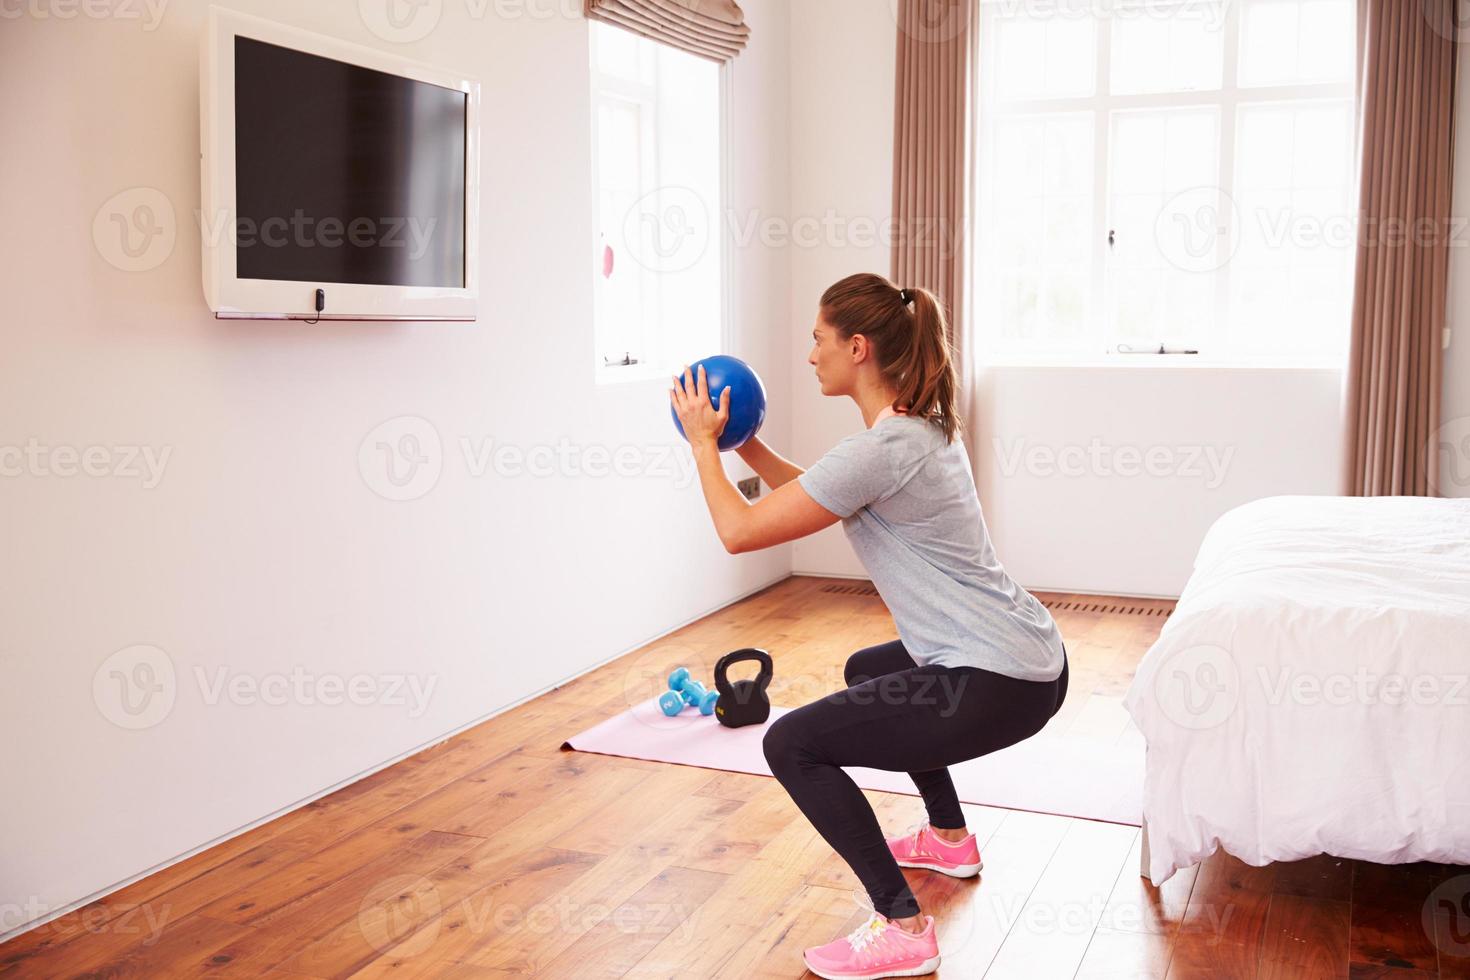 mulher malhando para fitness dvd na tv no quarto foto